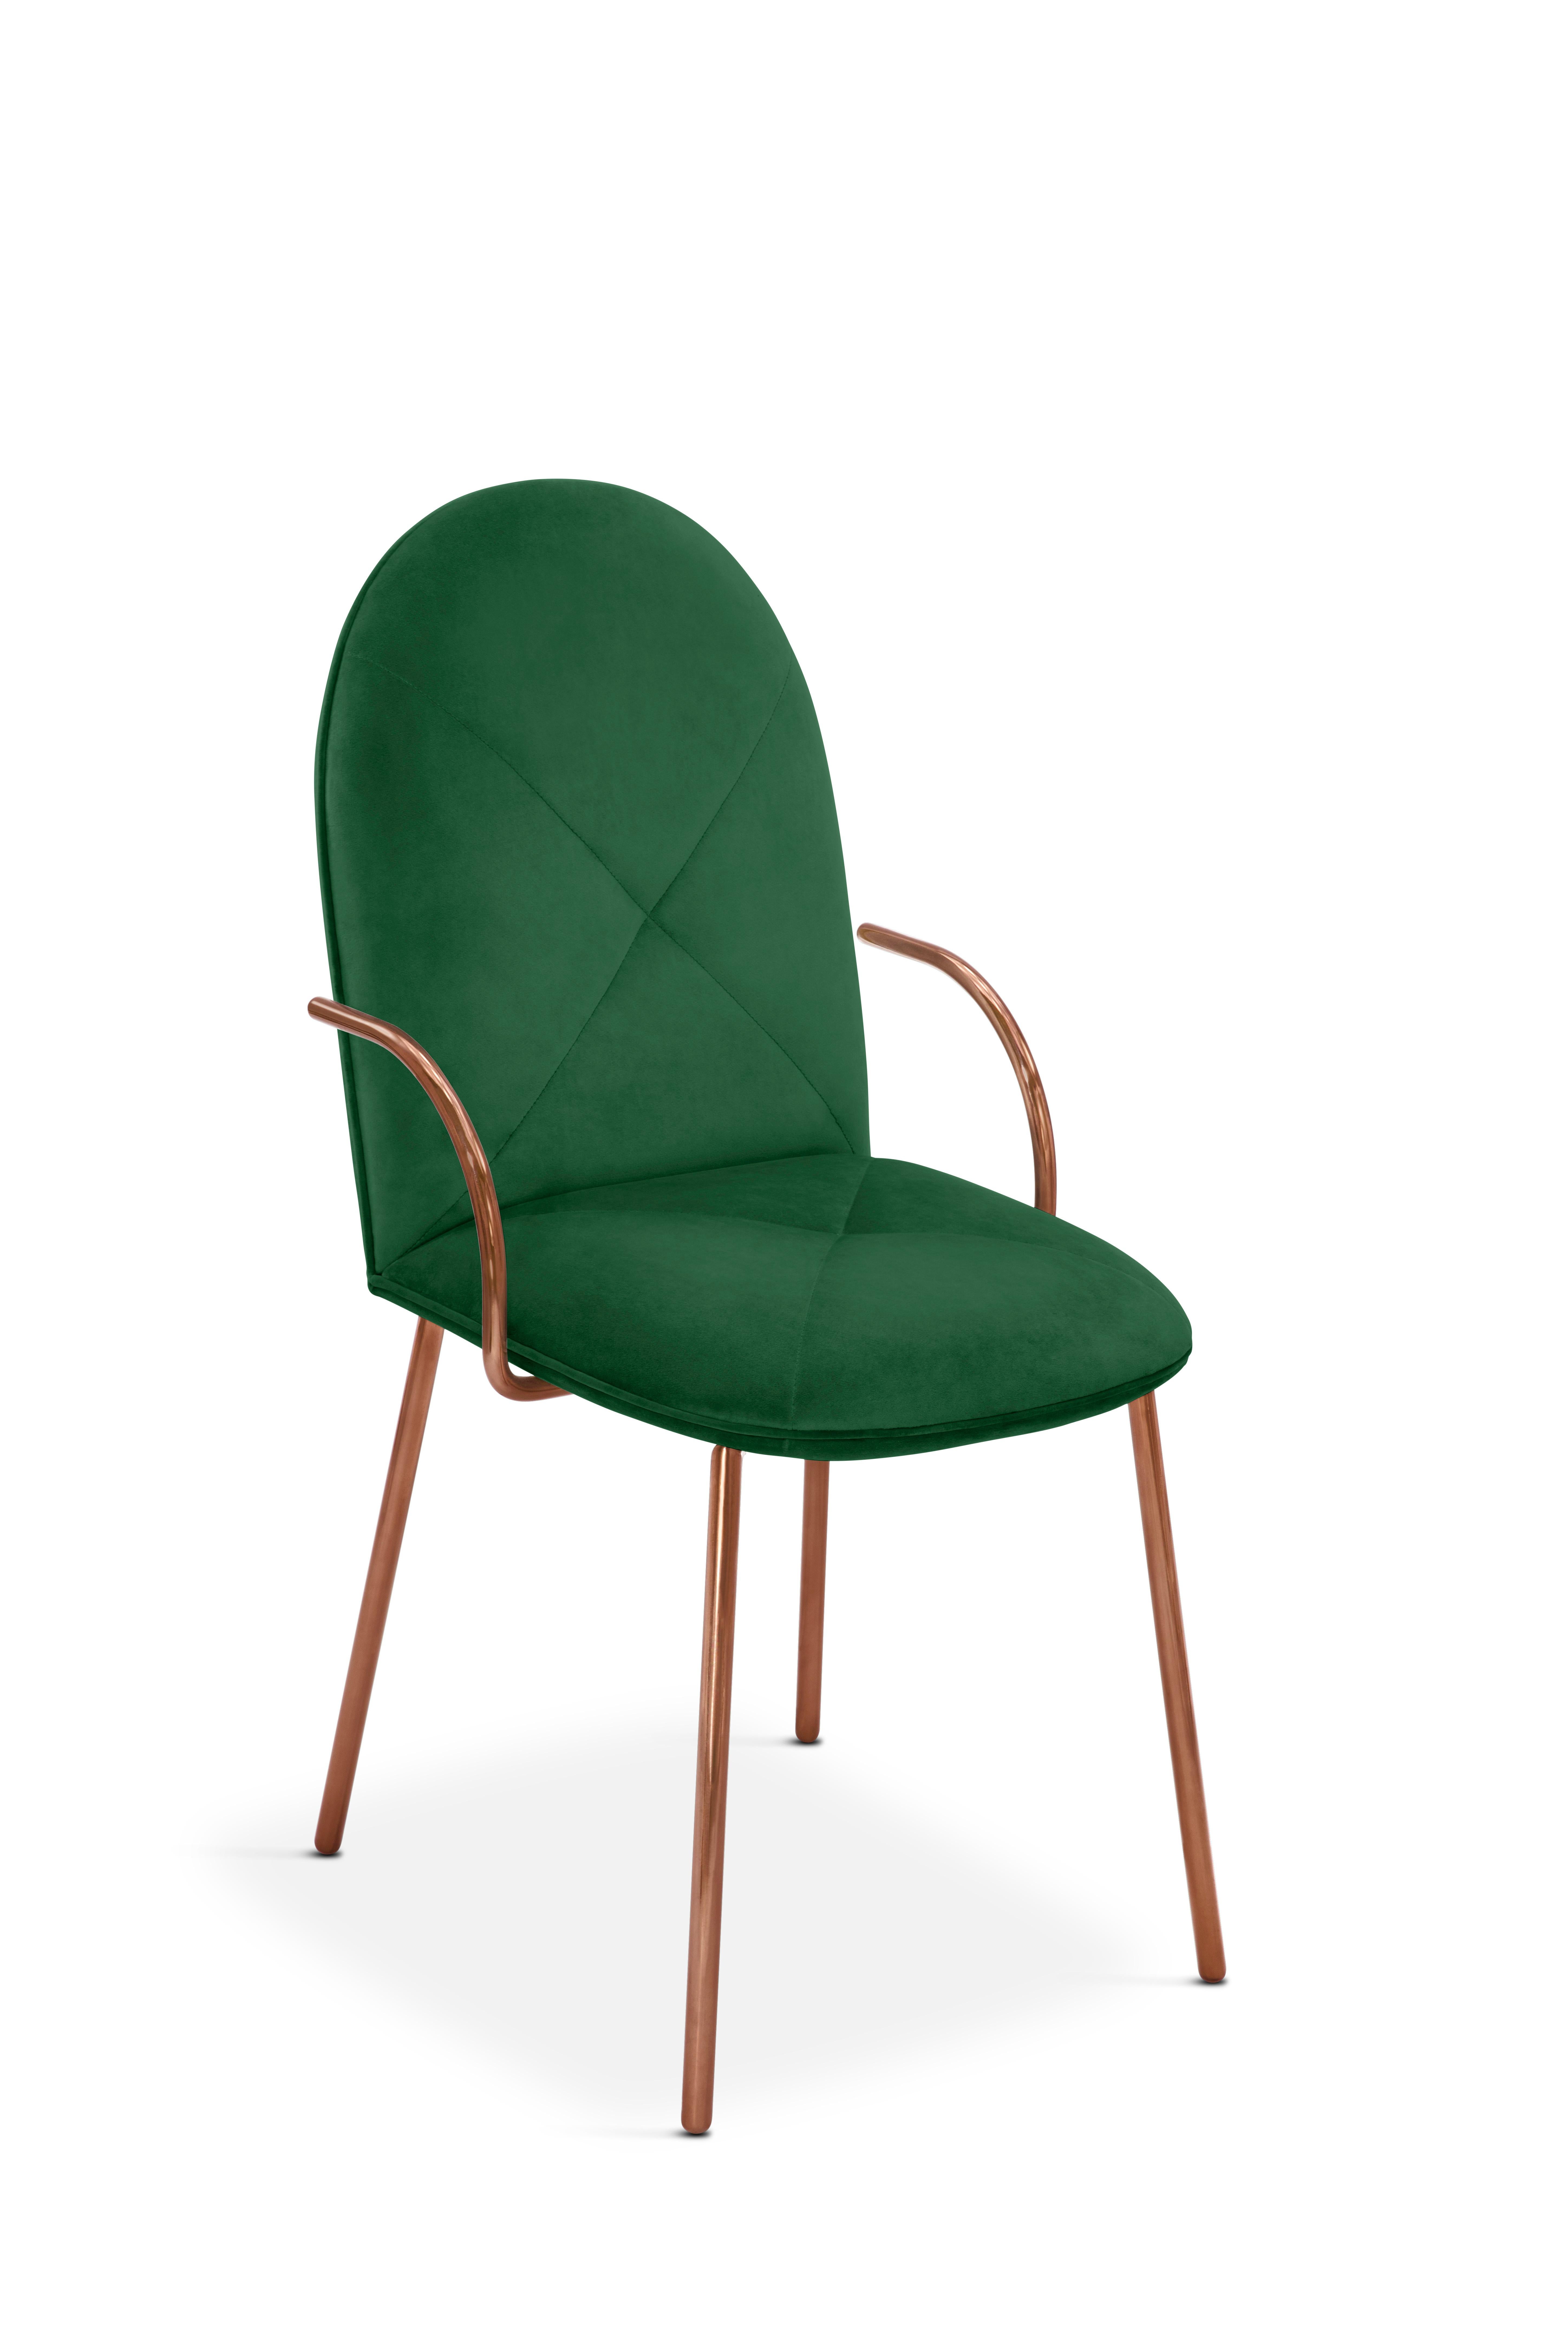 La chaise Orion Dining Chair avec velours vert pelucheux et bras en or rose de Nika Zupanc est une magnifique chaise en riche velours vert avec des pieds en métal en or rose.

Nika Zupanc, designer slovène de renom, n'hésite jamais à redéfinir le